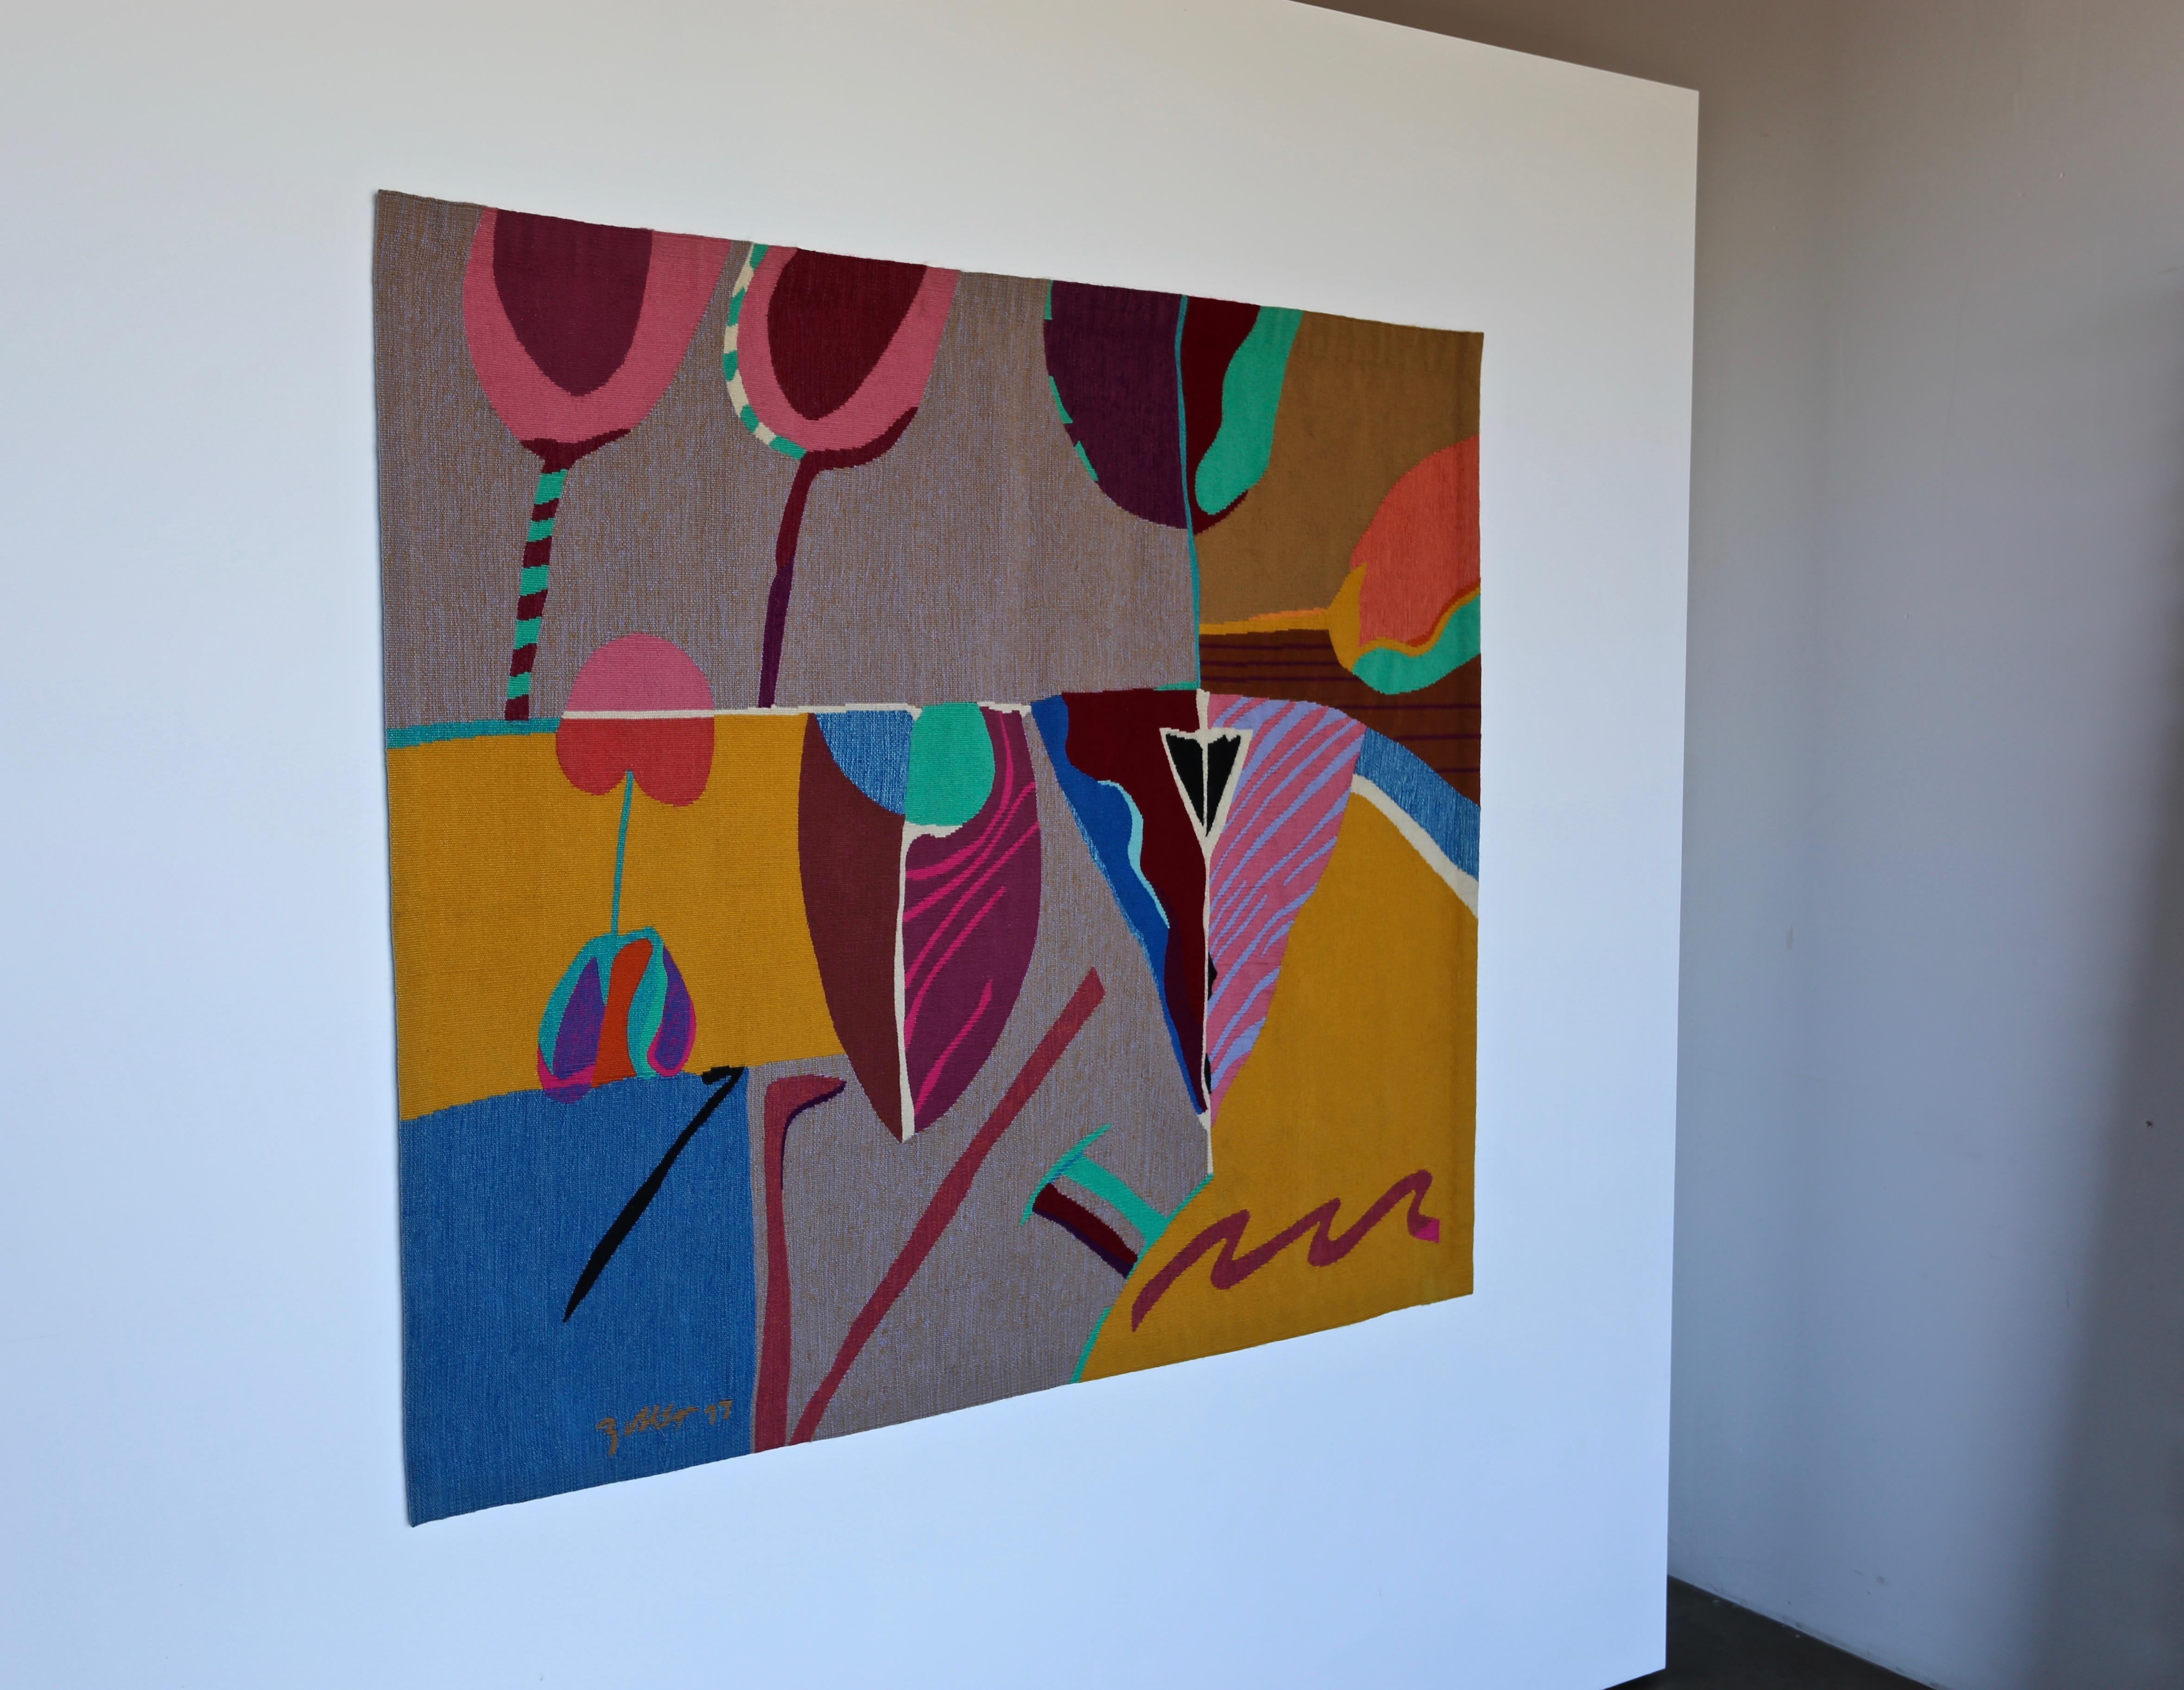 Abstract Modern Art tapestry by Steve Zoller.